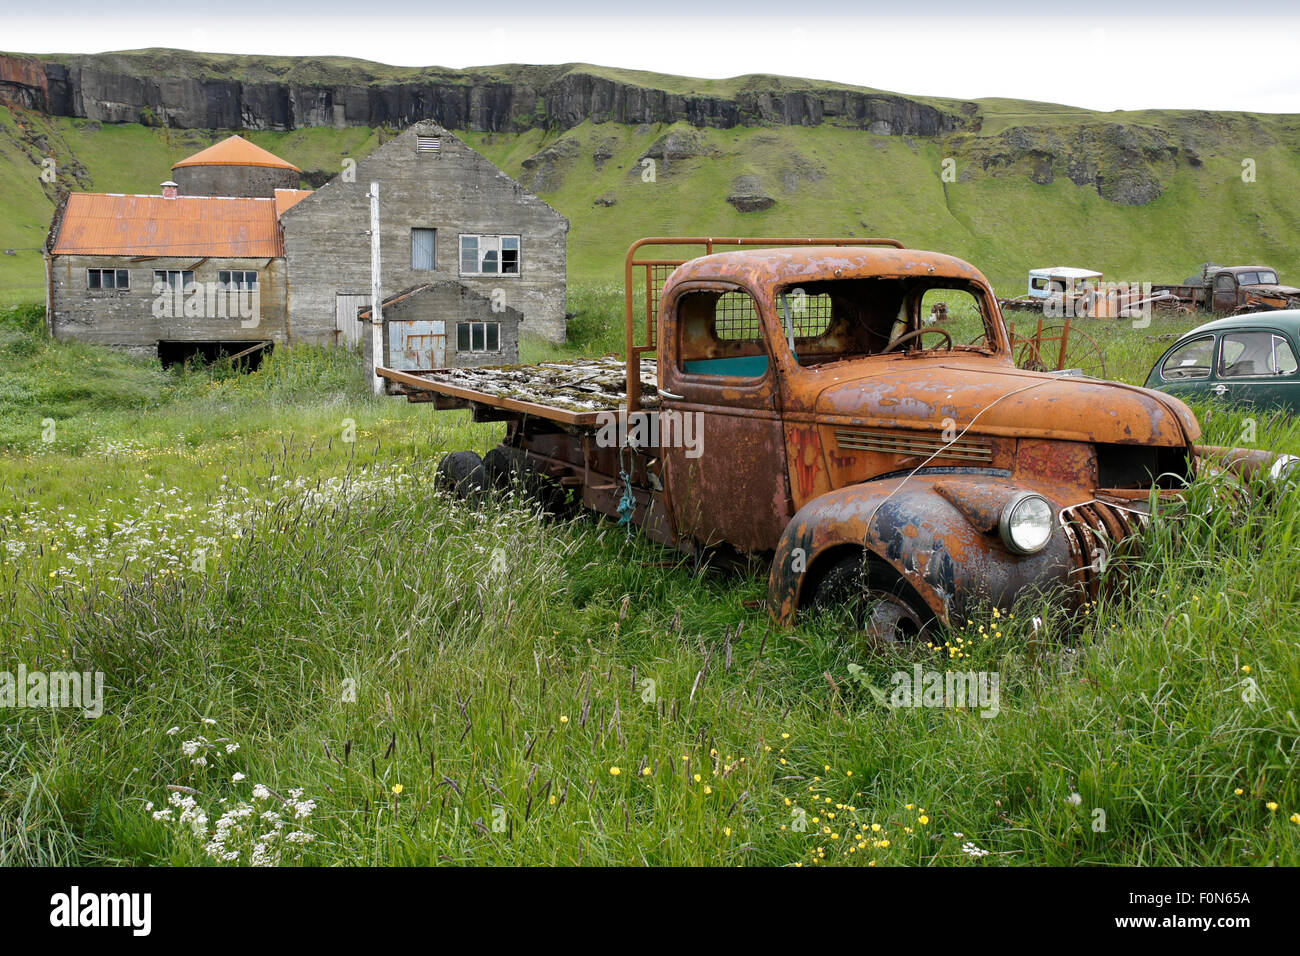 barnfind #rural #pickup #carros #abandonados #resgate #projectcarbr #